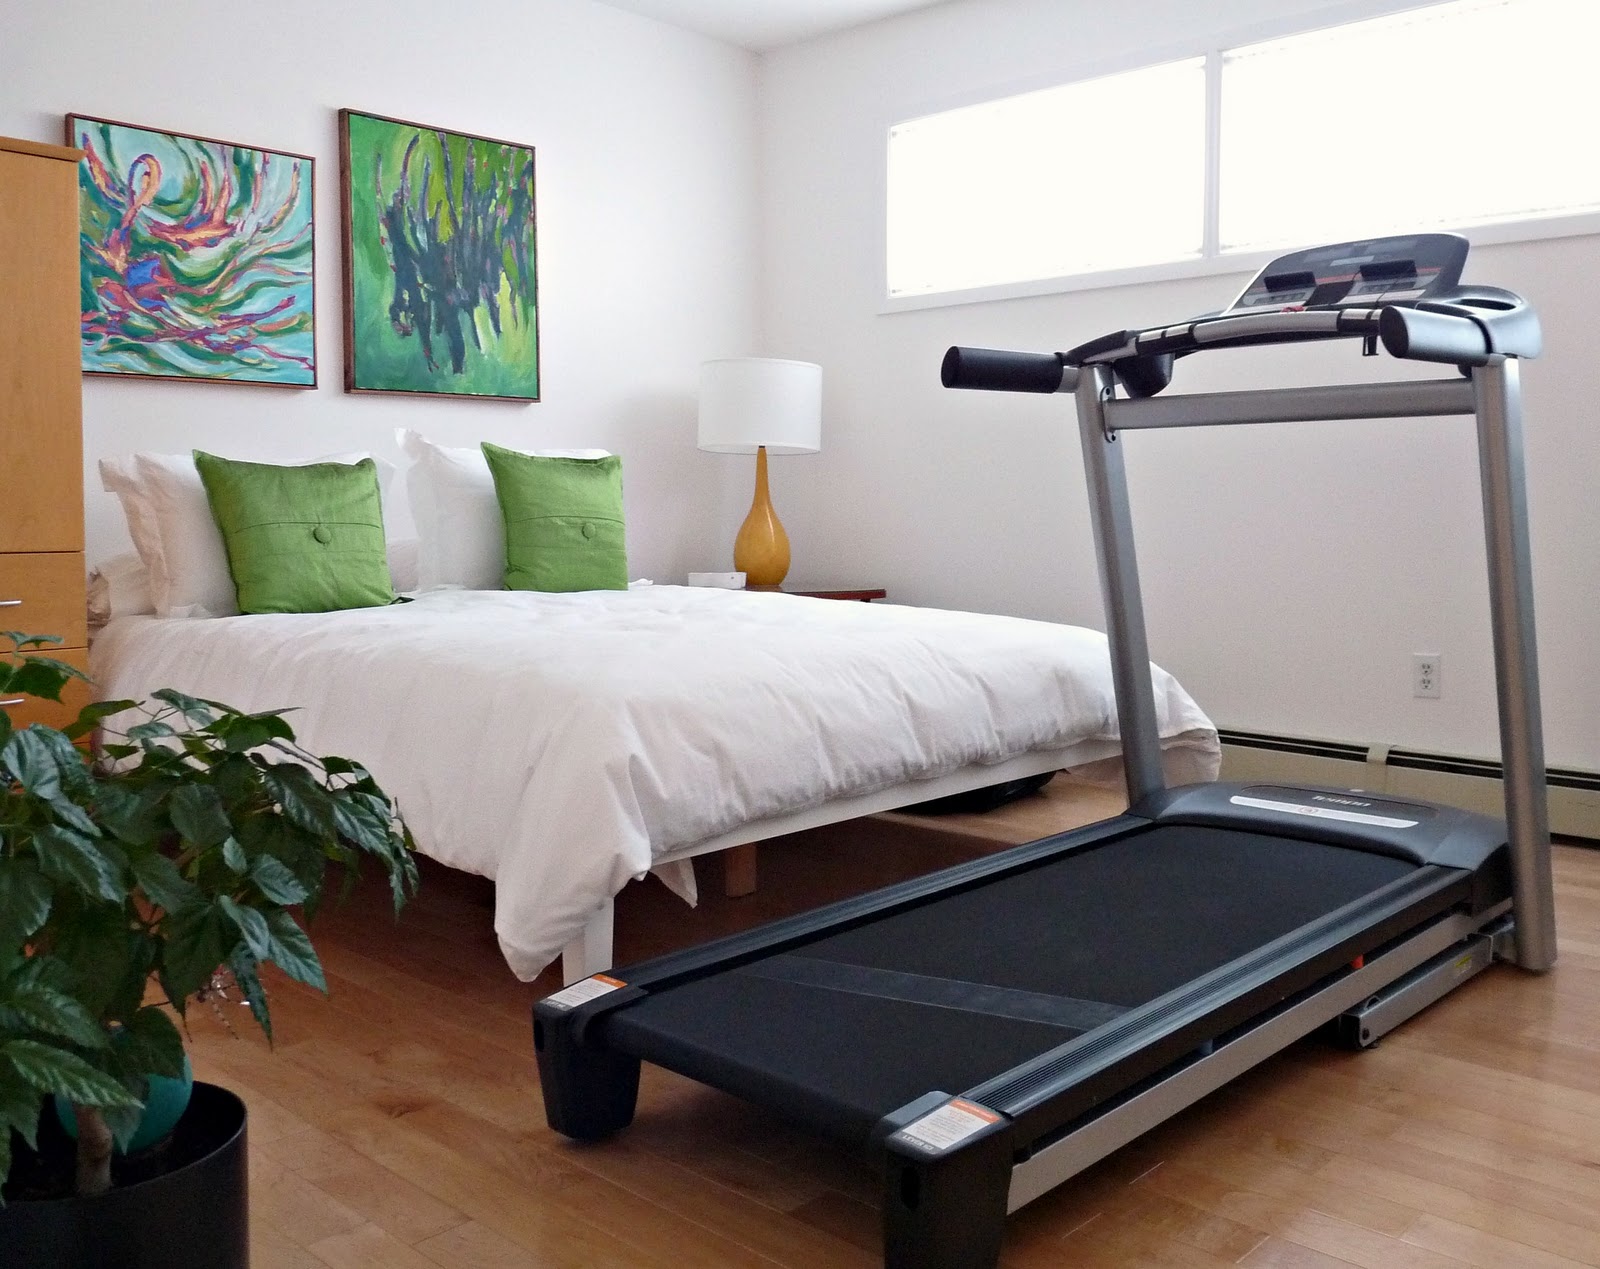 Việc đặt máy tập thể dục - hoạt động gây tiêu hao năng lượng - trong không gian ngủ nghỉ cũng là điều nên tránh.